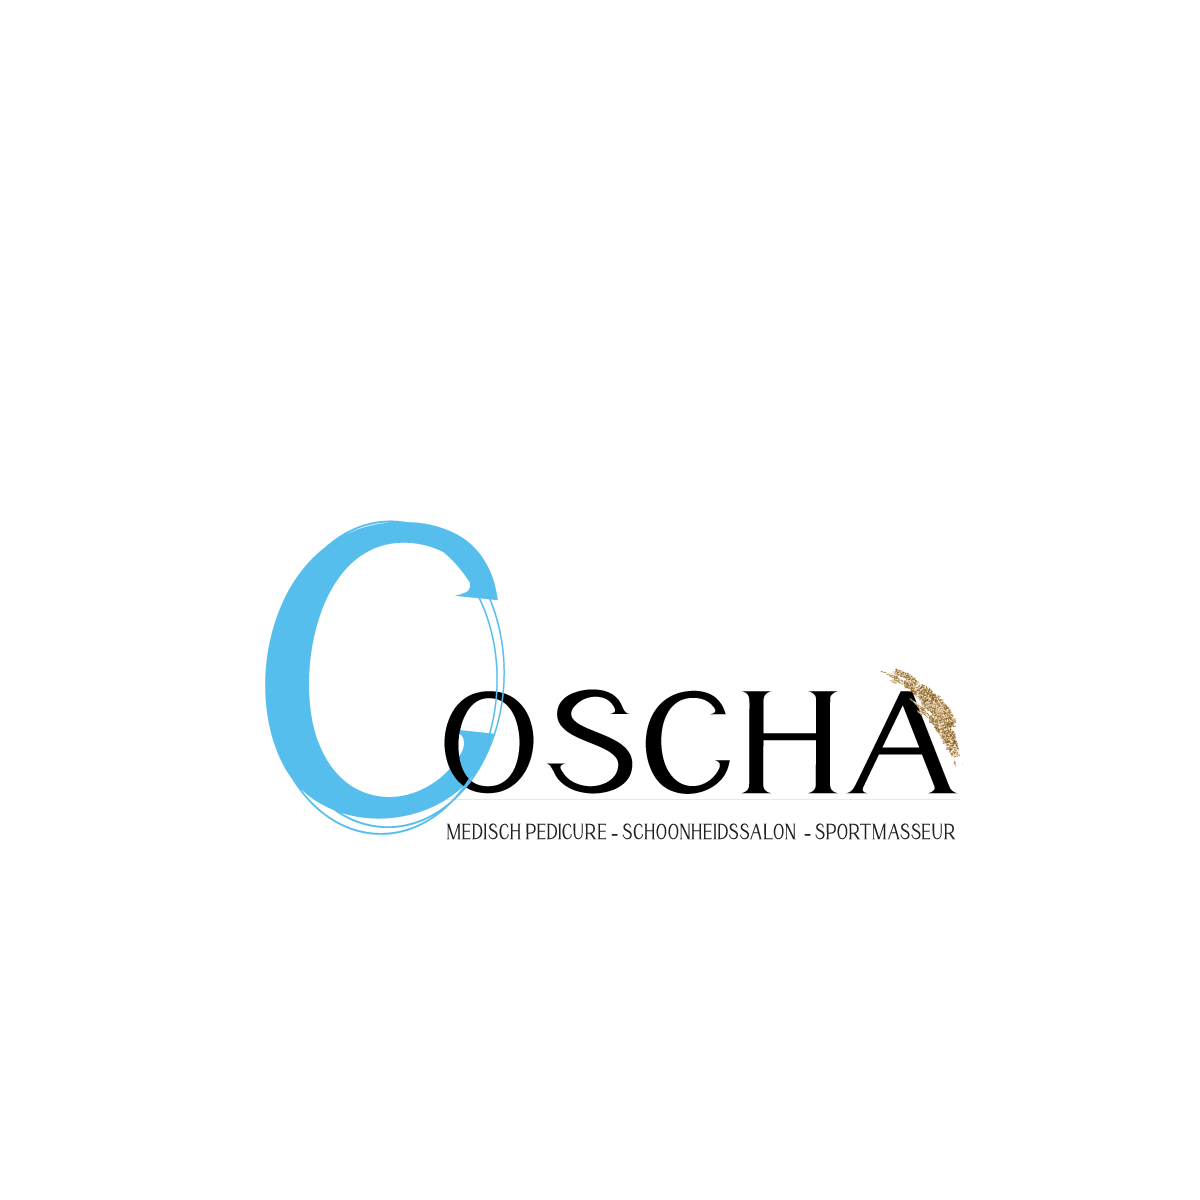 Coscha  voor Pedicure, Massage en Schoonheidssalon